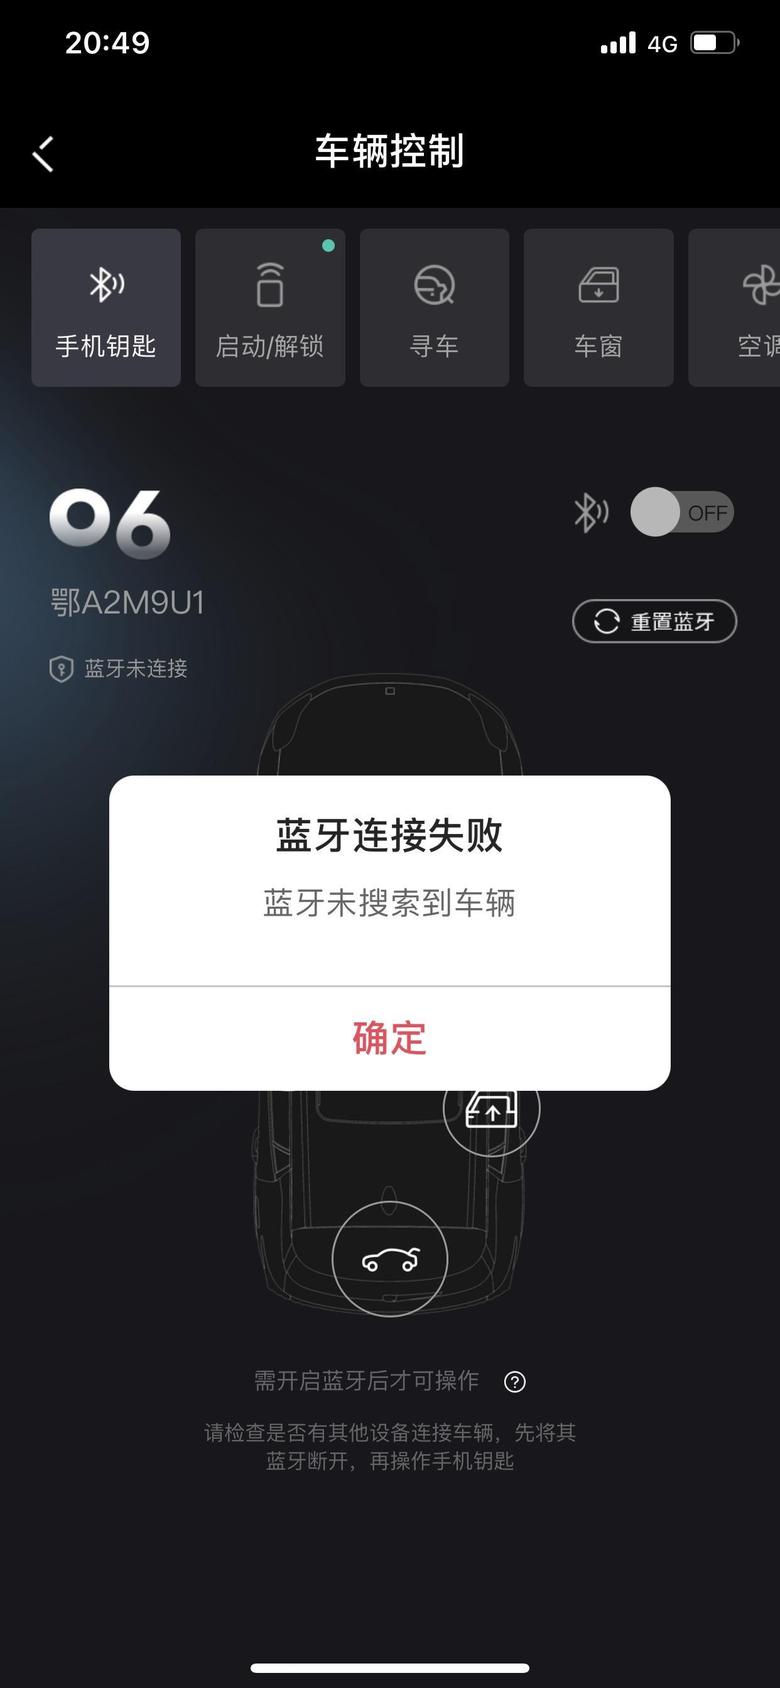 领克06 iOSapp开启蓝牙钥匙总提示搜不到车辆，请问是什么原因，手机蓝牙已经打开了。